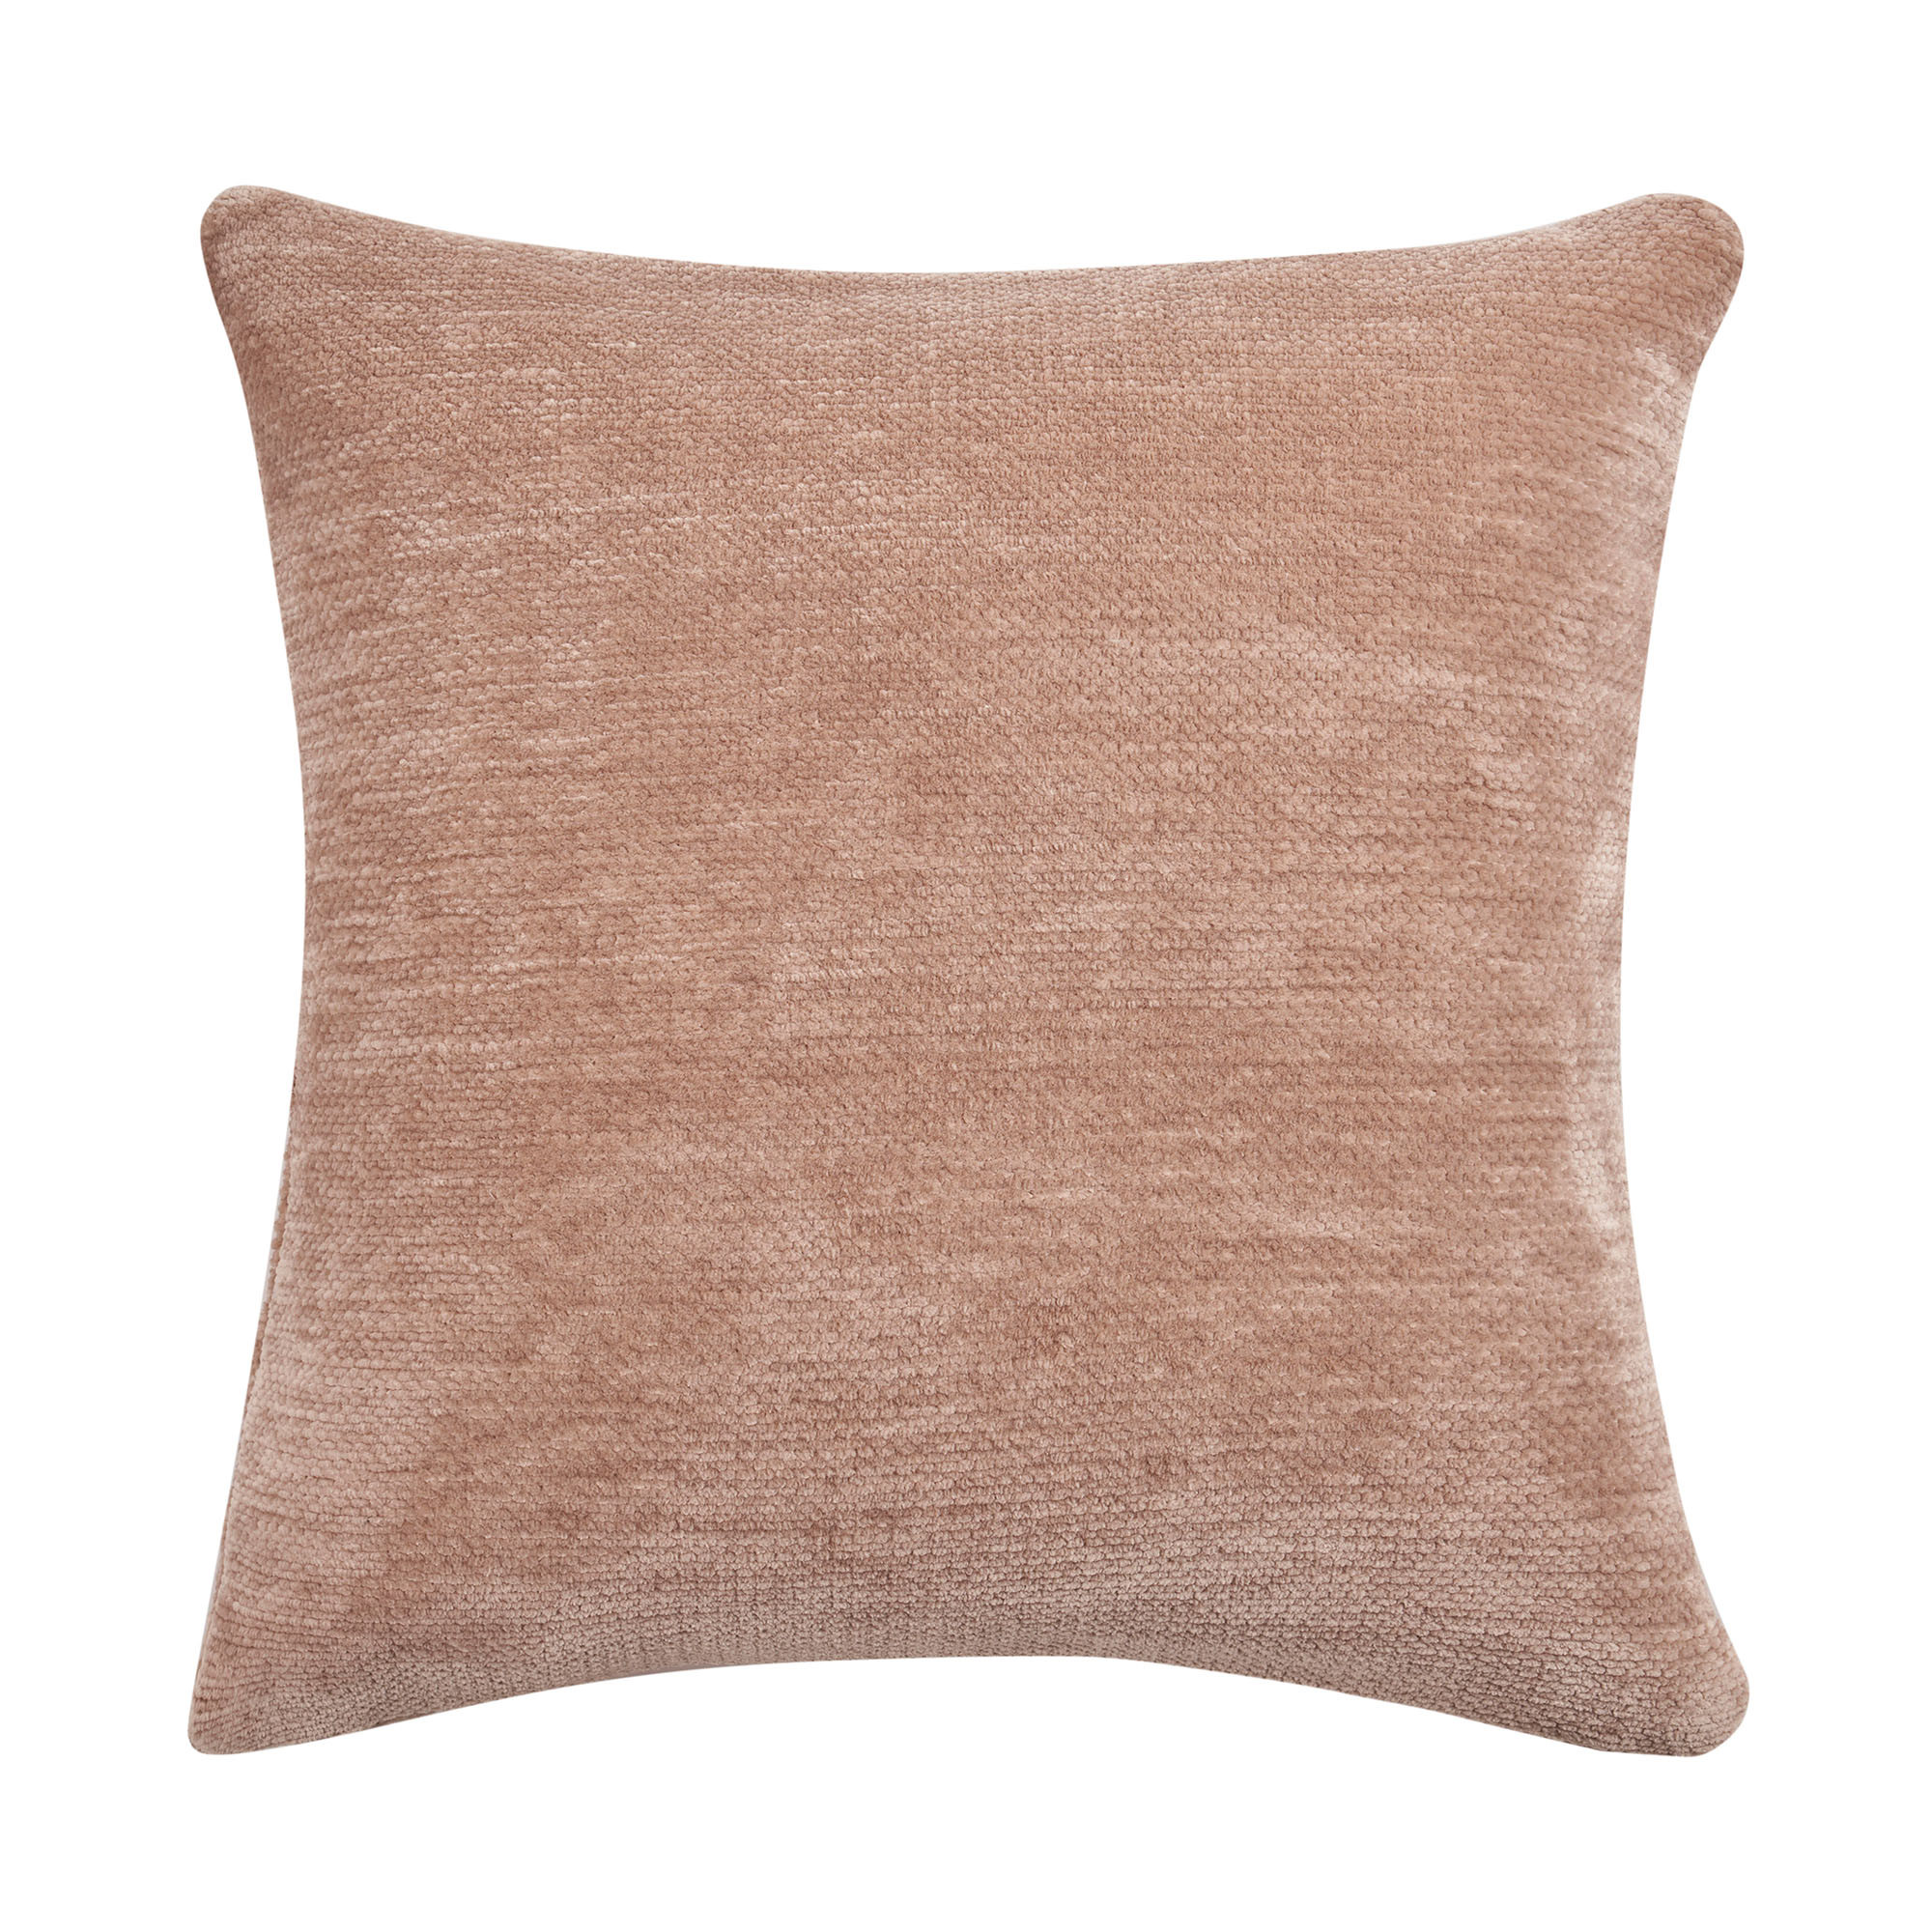 20" X 20" Beige Chenille Zippered Pillow-535251-1